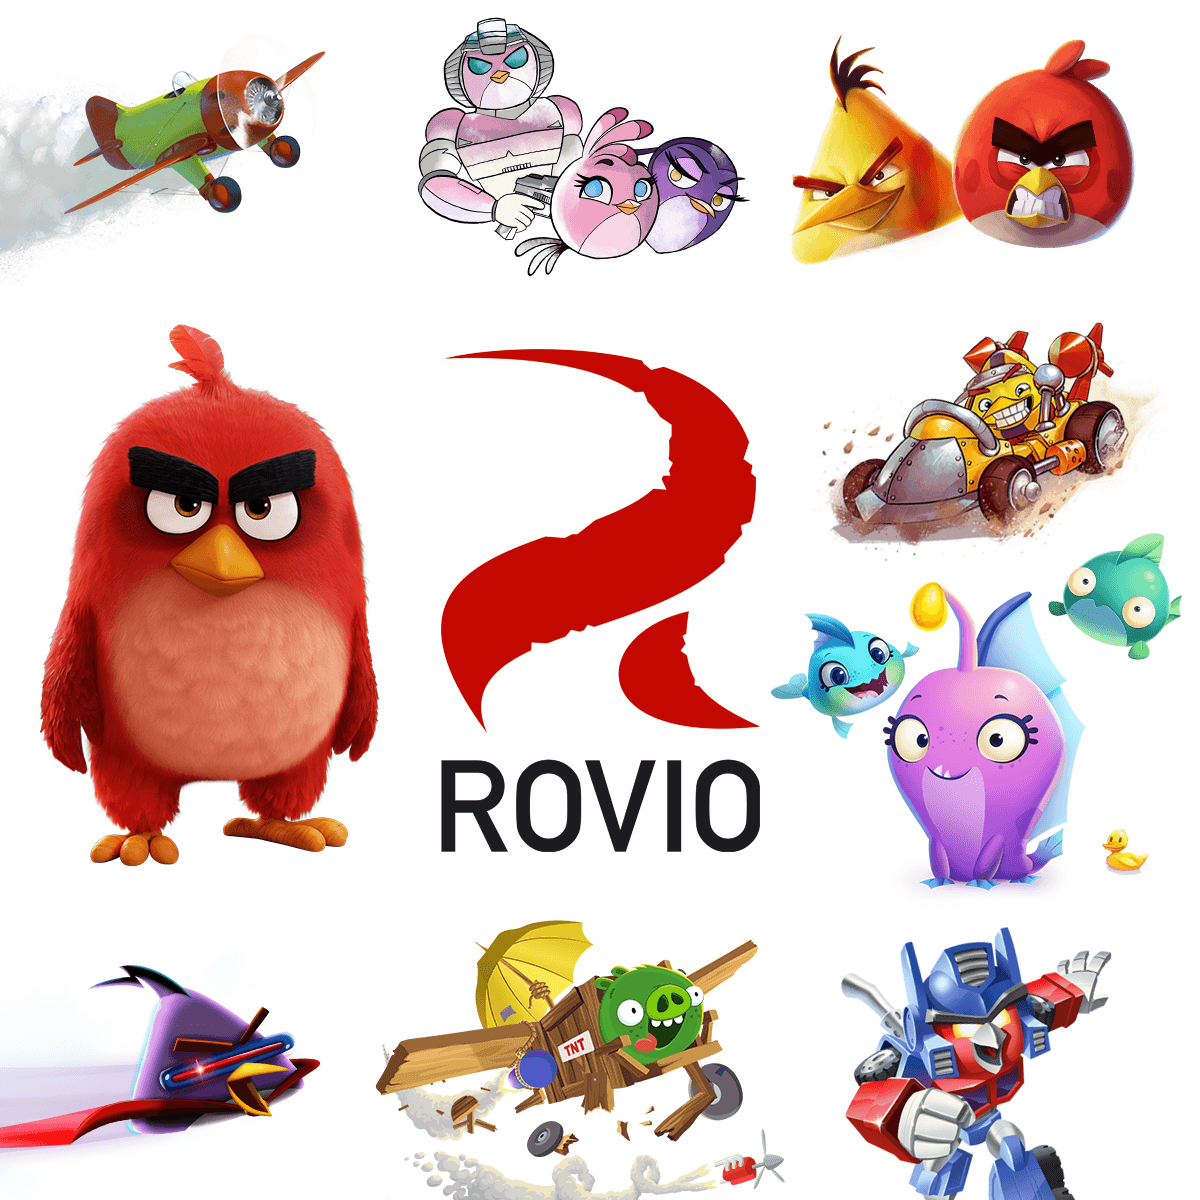 Rovio Logo - Rovio.com | The home of Rovio - maker of Angry Birds, Bad Piggies ...